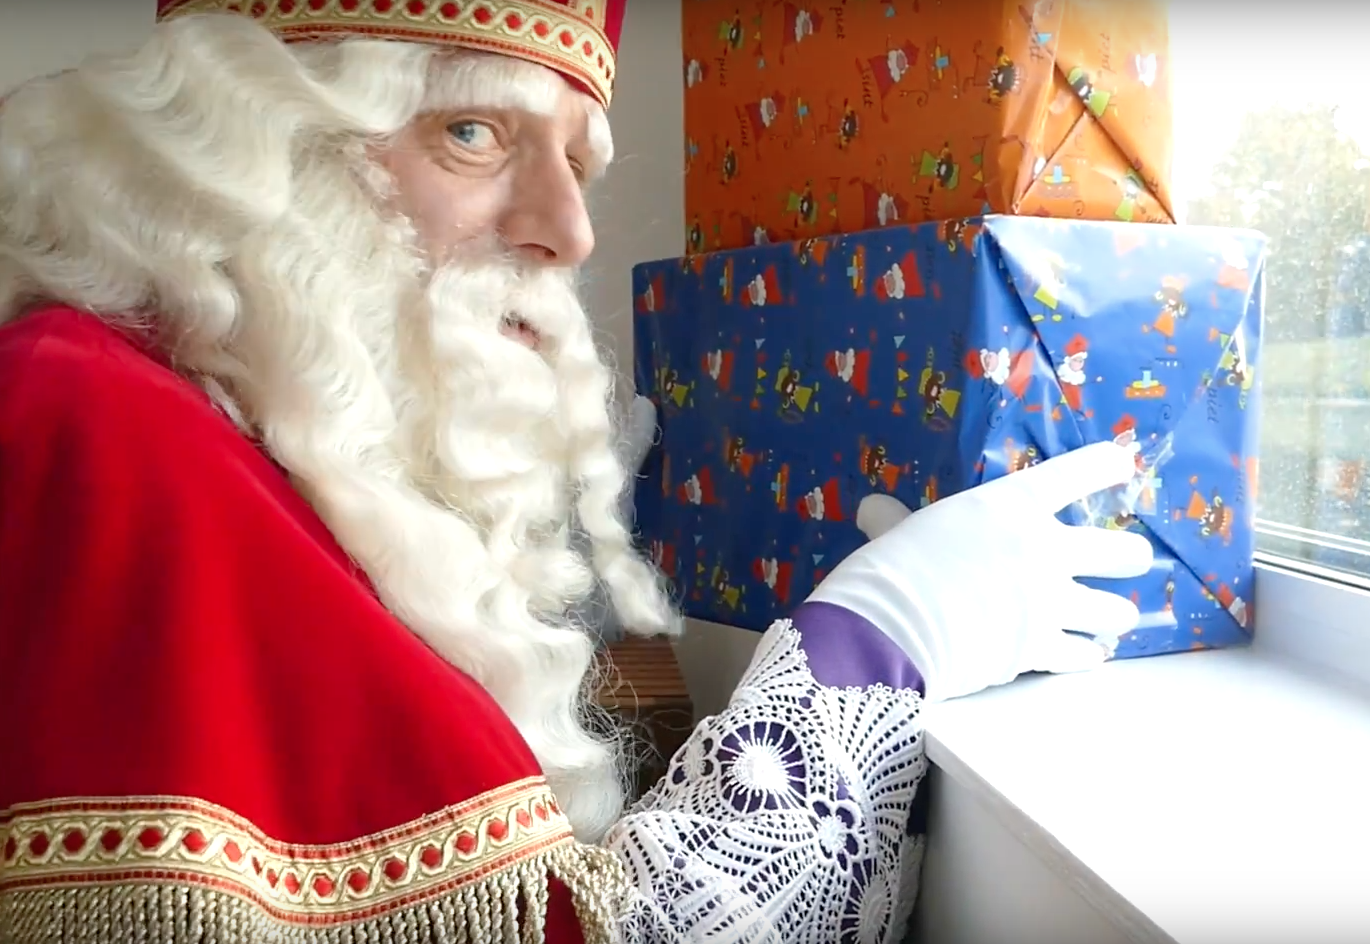 Sinterklaasjournaal: Sinterklaas is aangekomen Nederland; morgen ook in Utrecht | De Internet Courant